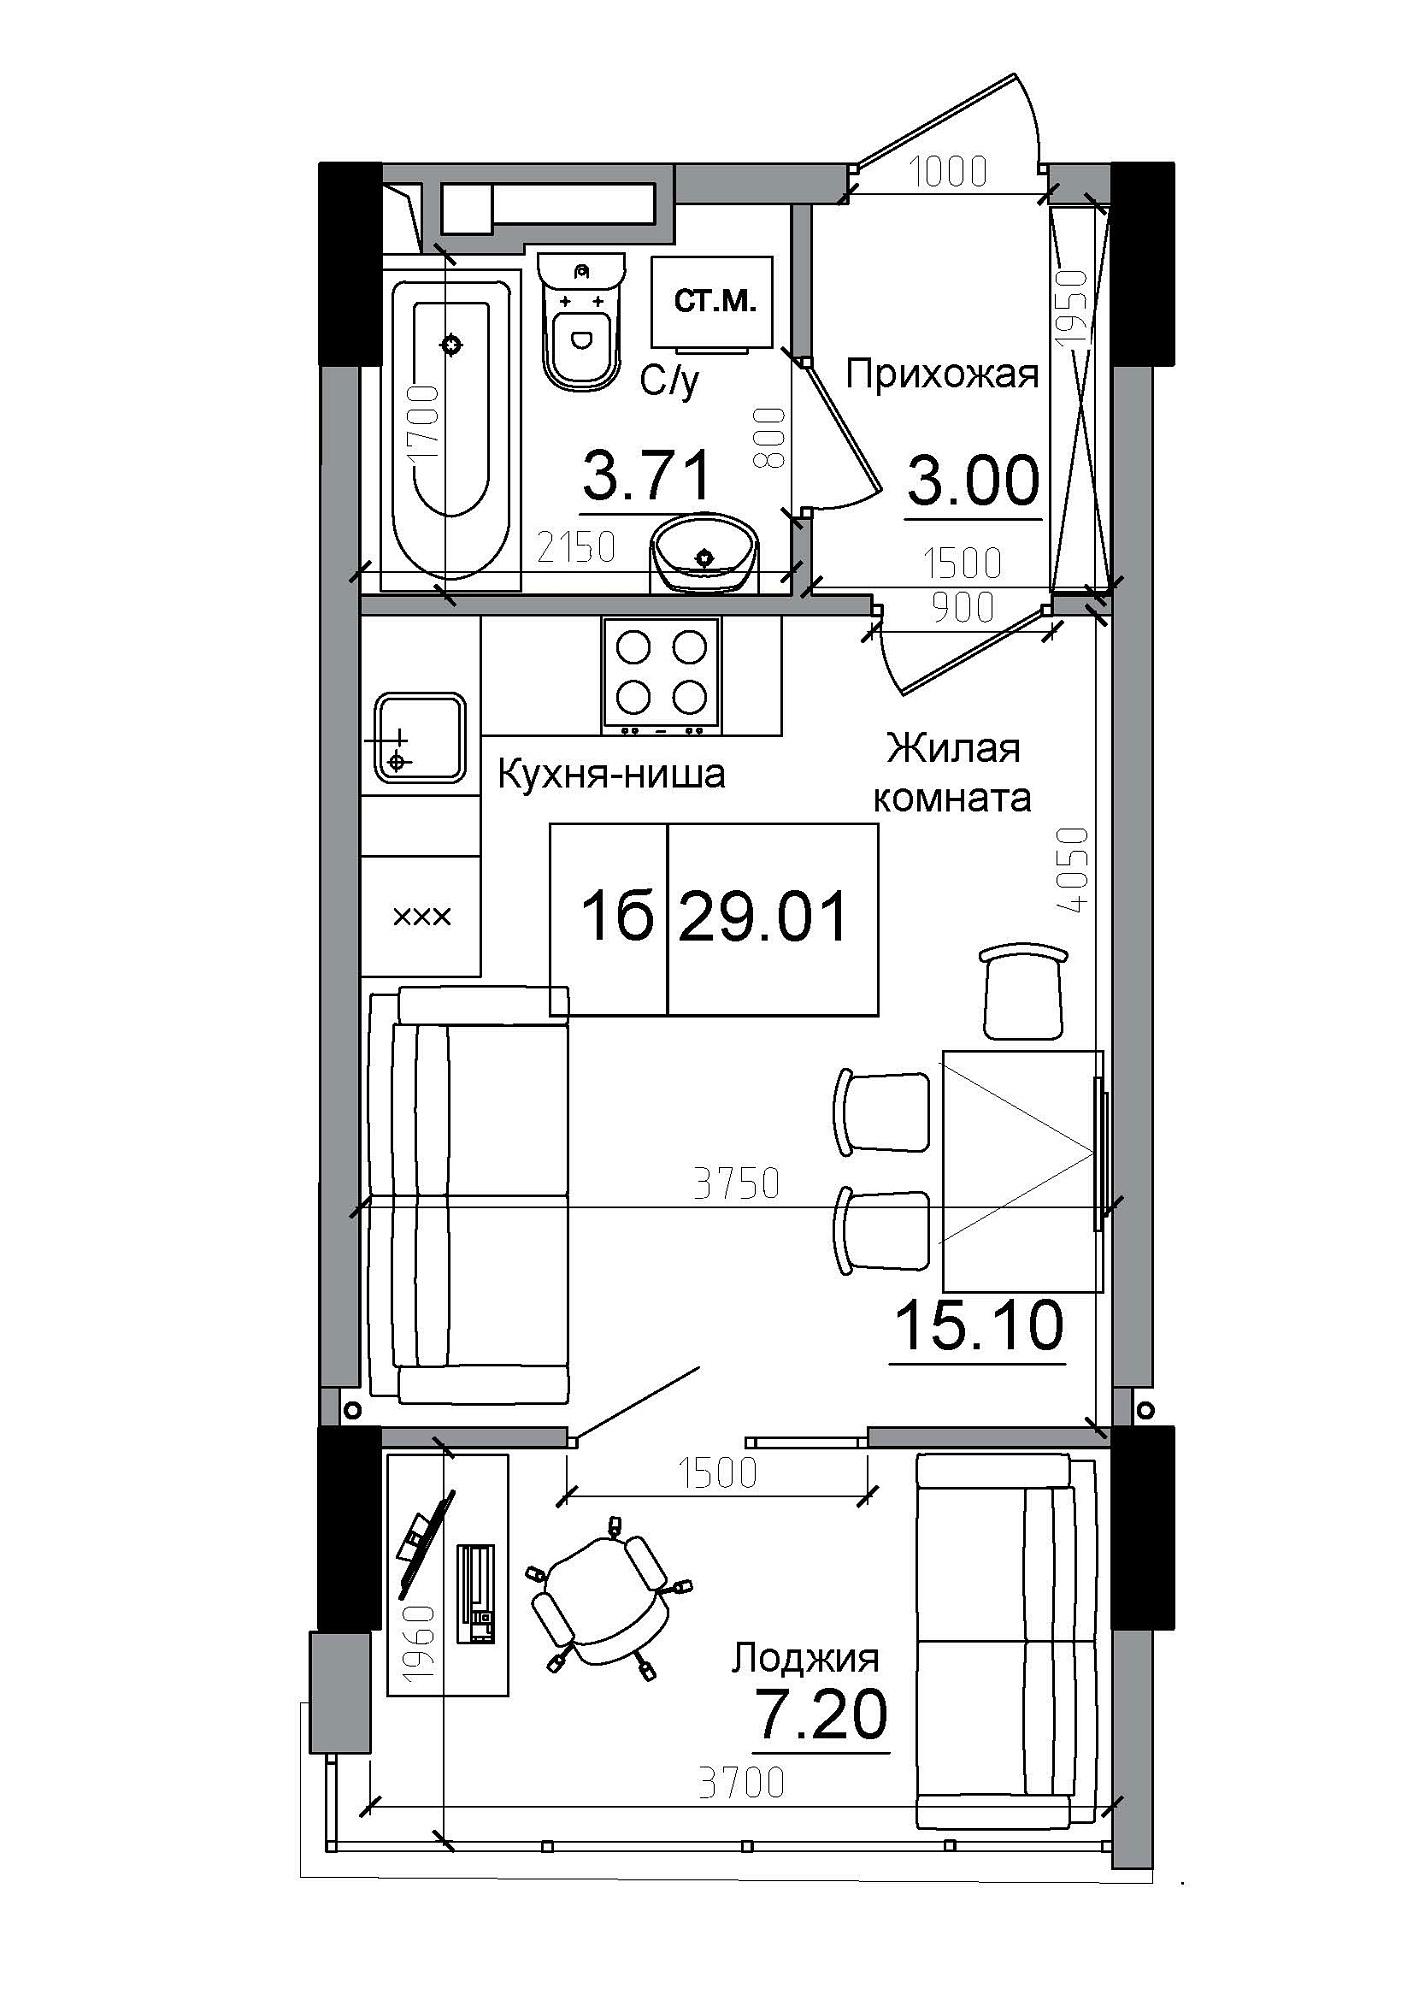 Планування Smart-квартира площею 29.01м2, AB-12-10/00002.